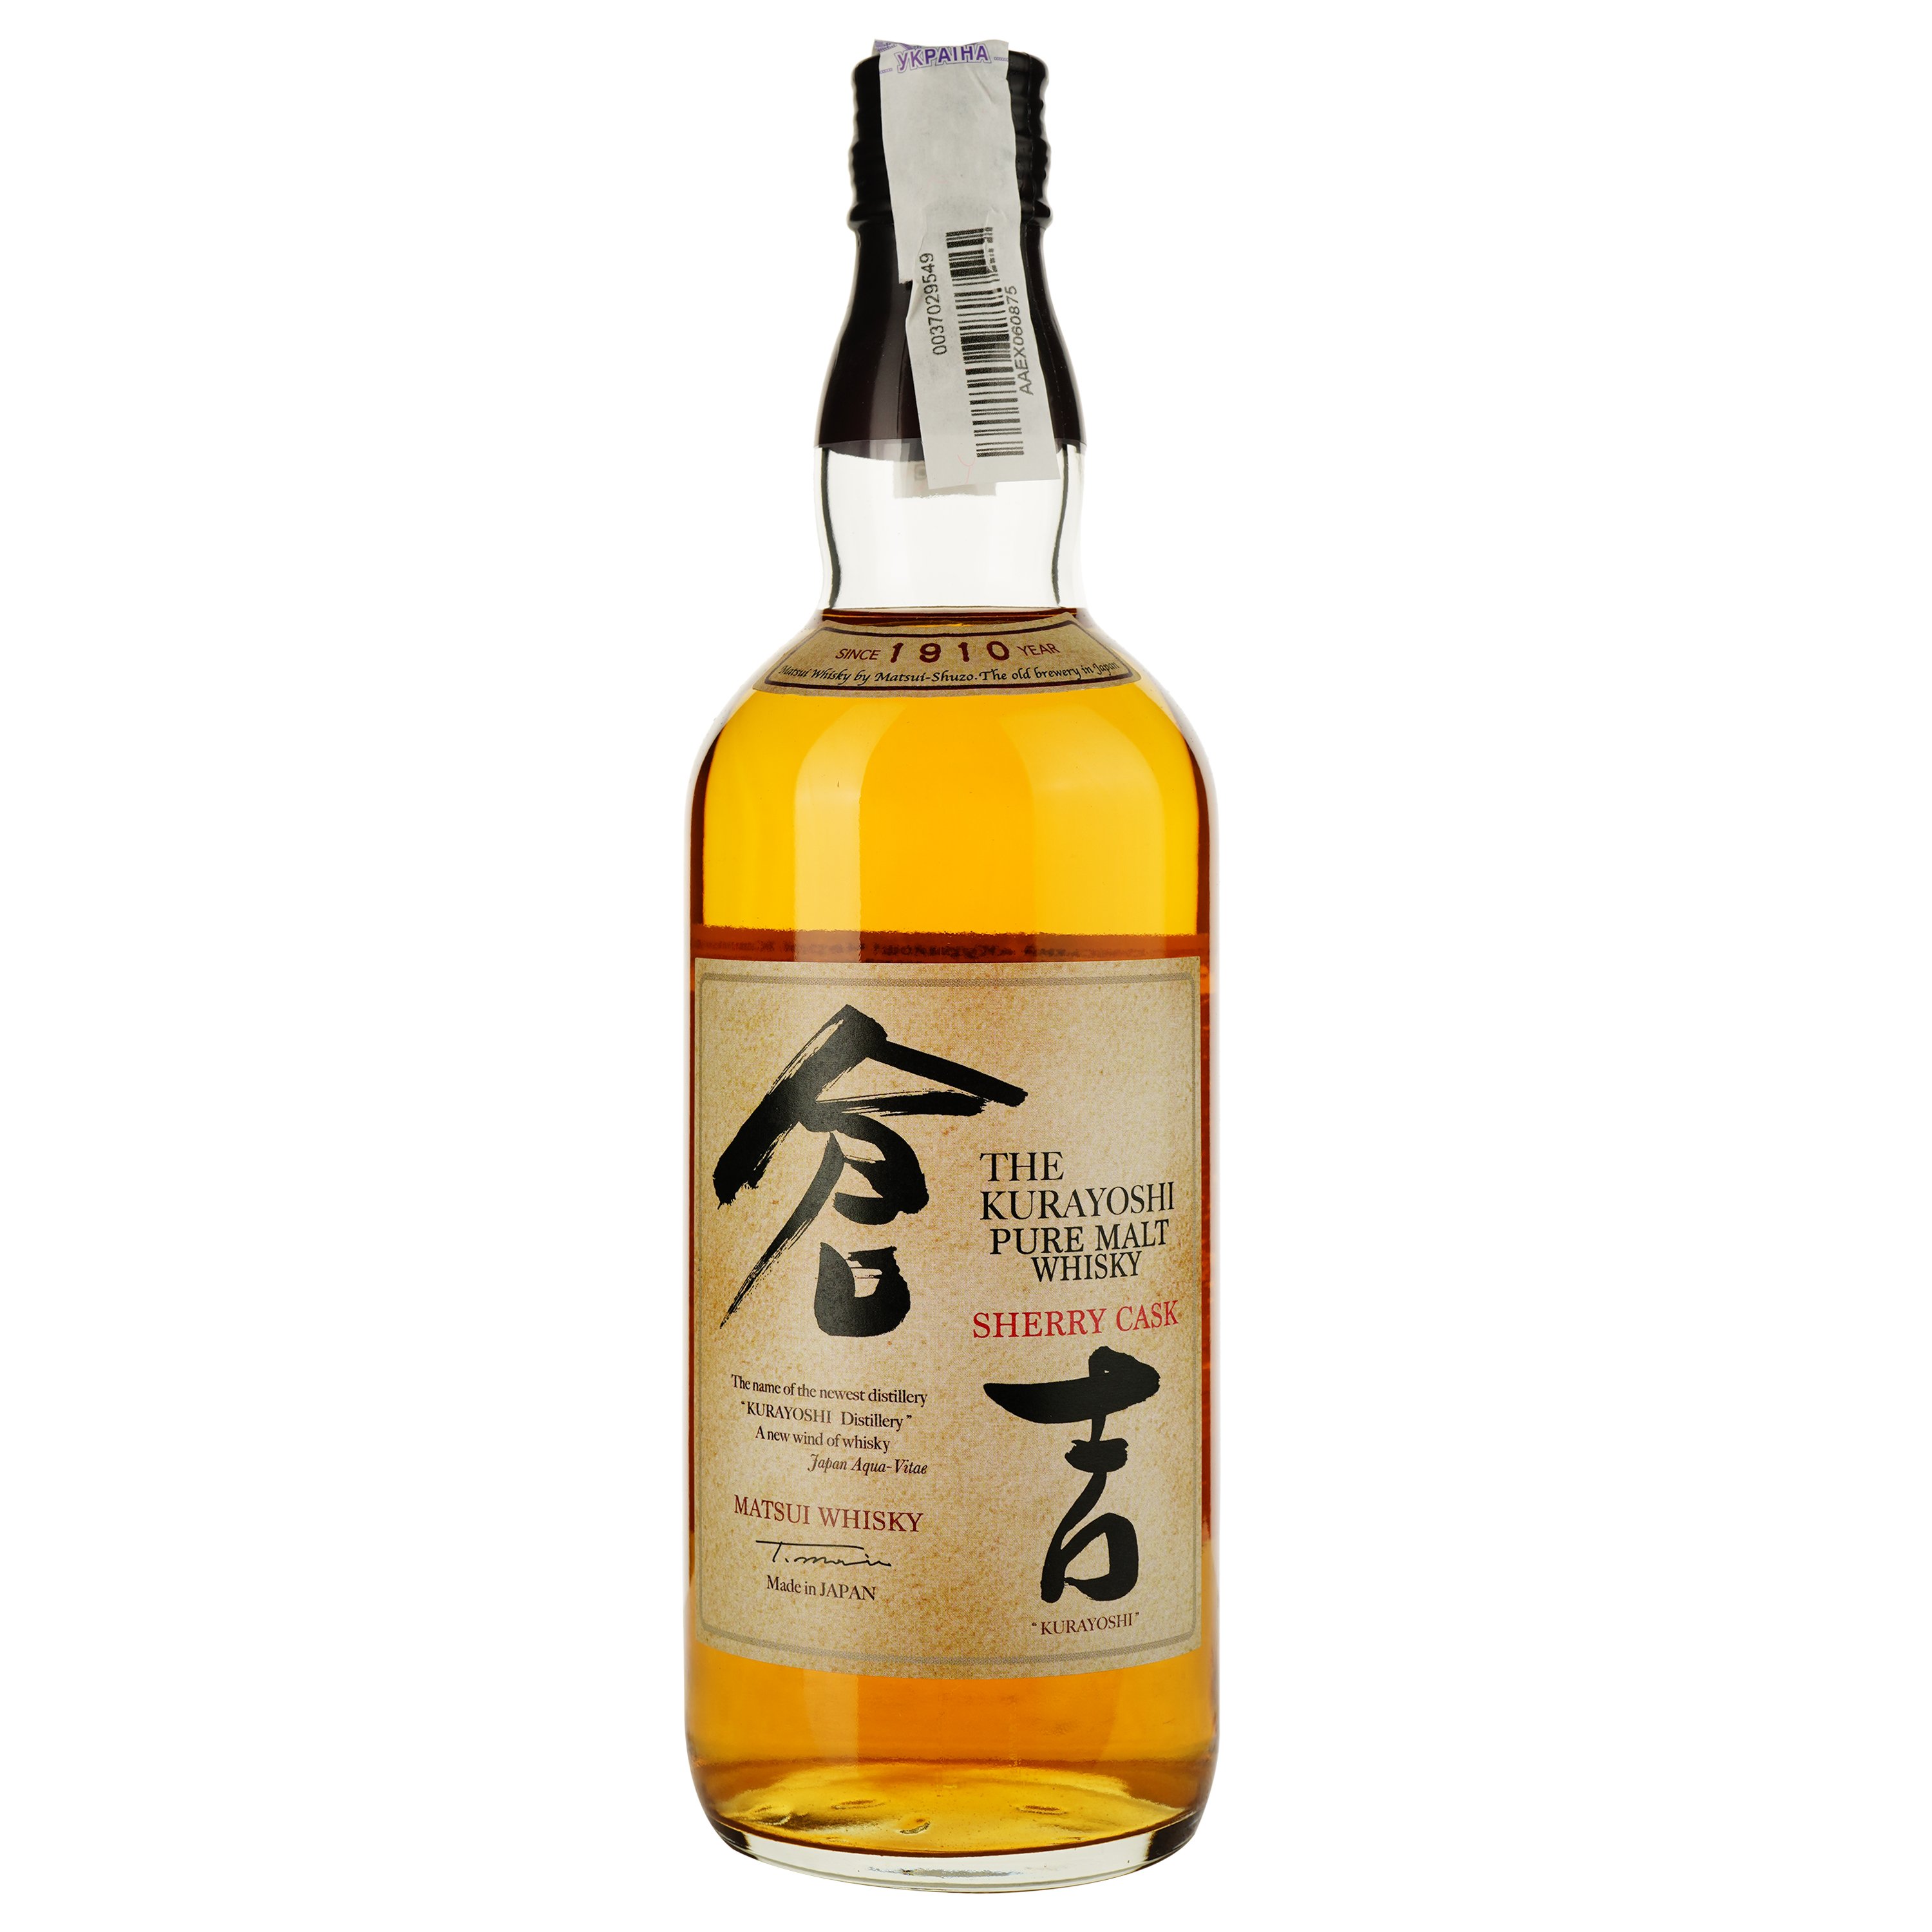 Виски The Kurayoshi Sherry Cask Japanese Pure Malt Whisky, в подарочной упаковке, 43%, 0,7 л - фото 2